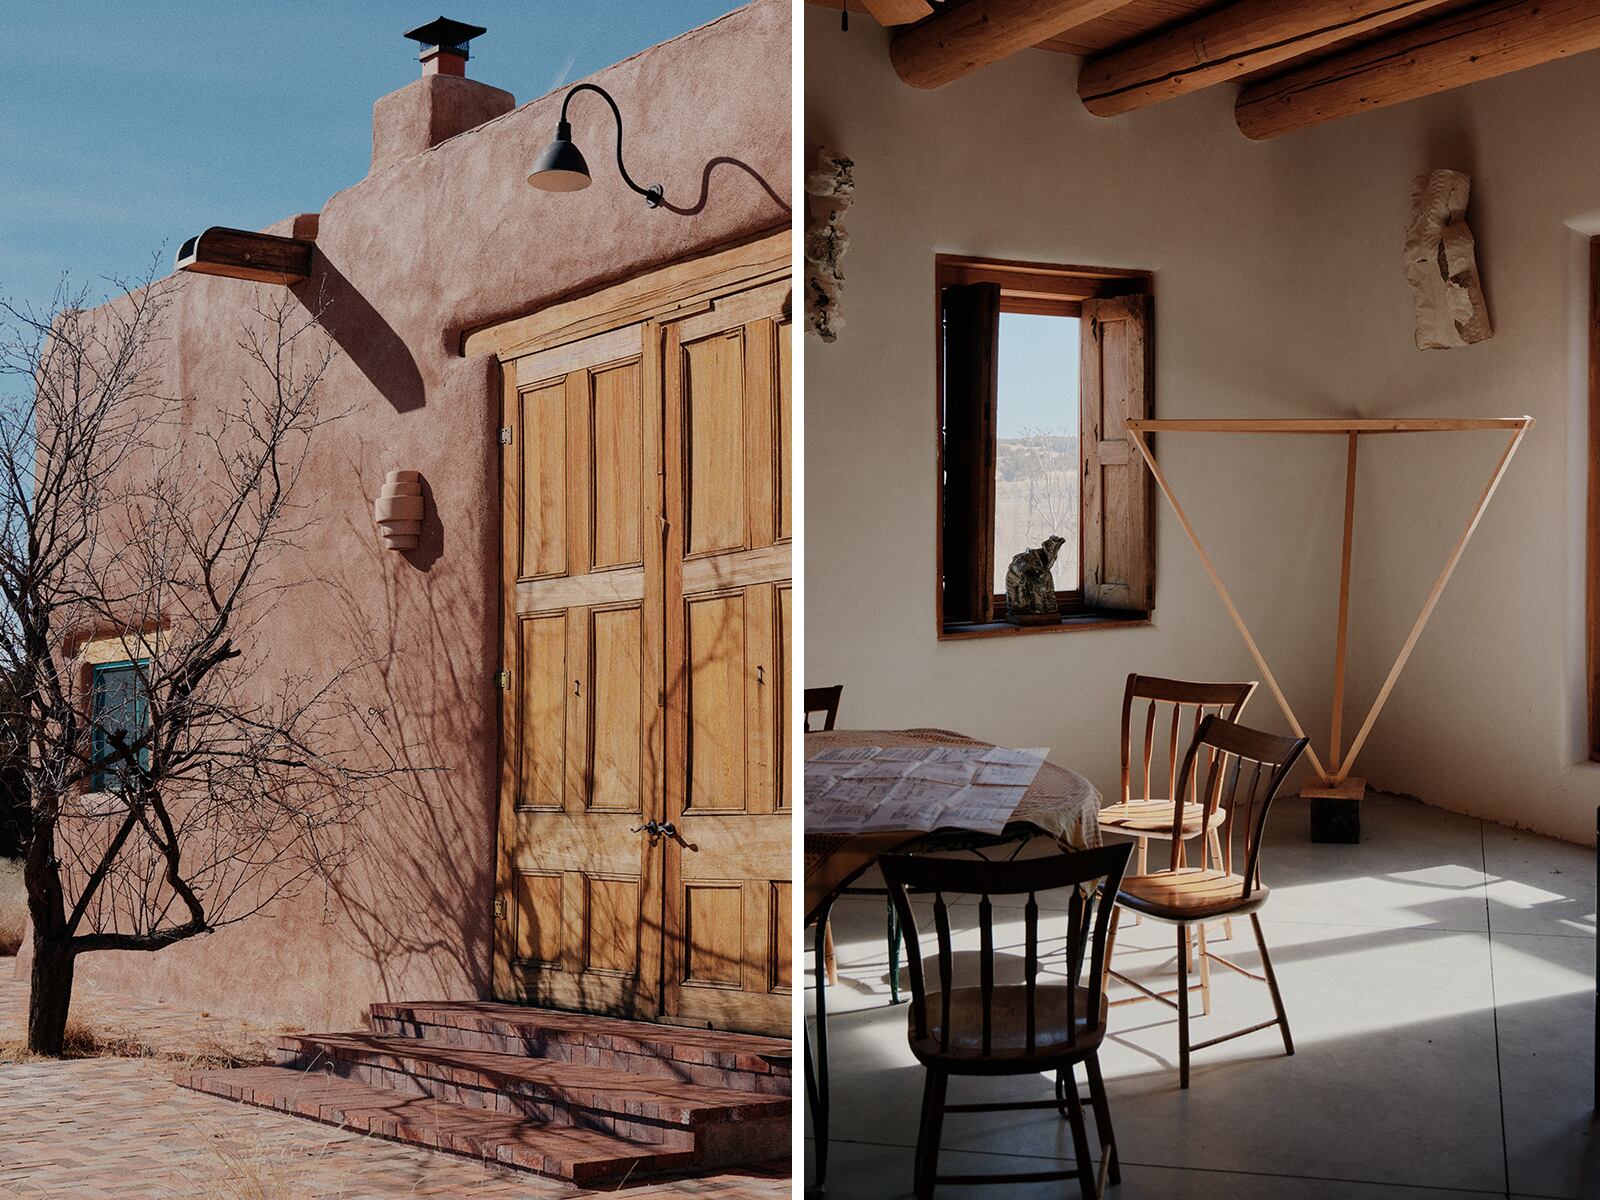 Desde 1997, Lynda Benglis trabaja en un estudio hecho de adobe, que construyó tras una visita a Santa Fe, Nuevo México, donde se enamoró del paisaje. El propio estudio es de alguna forma una galería donde ver algunos elementos característicos de su obra.